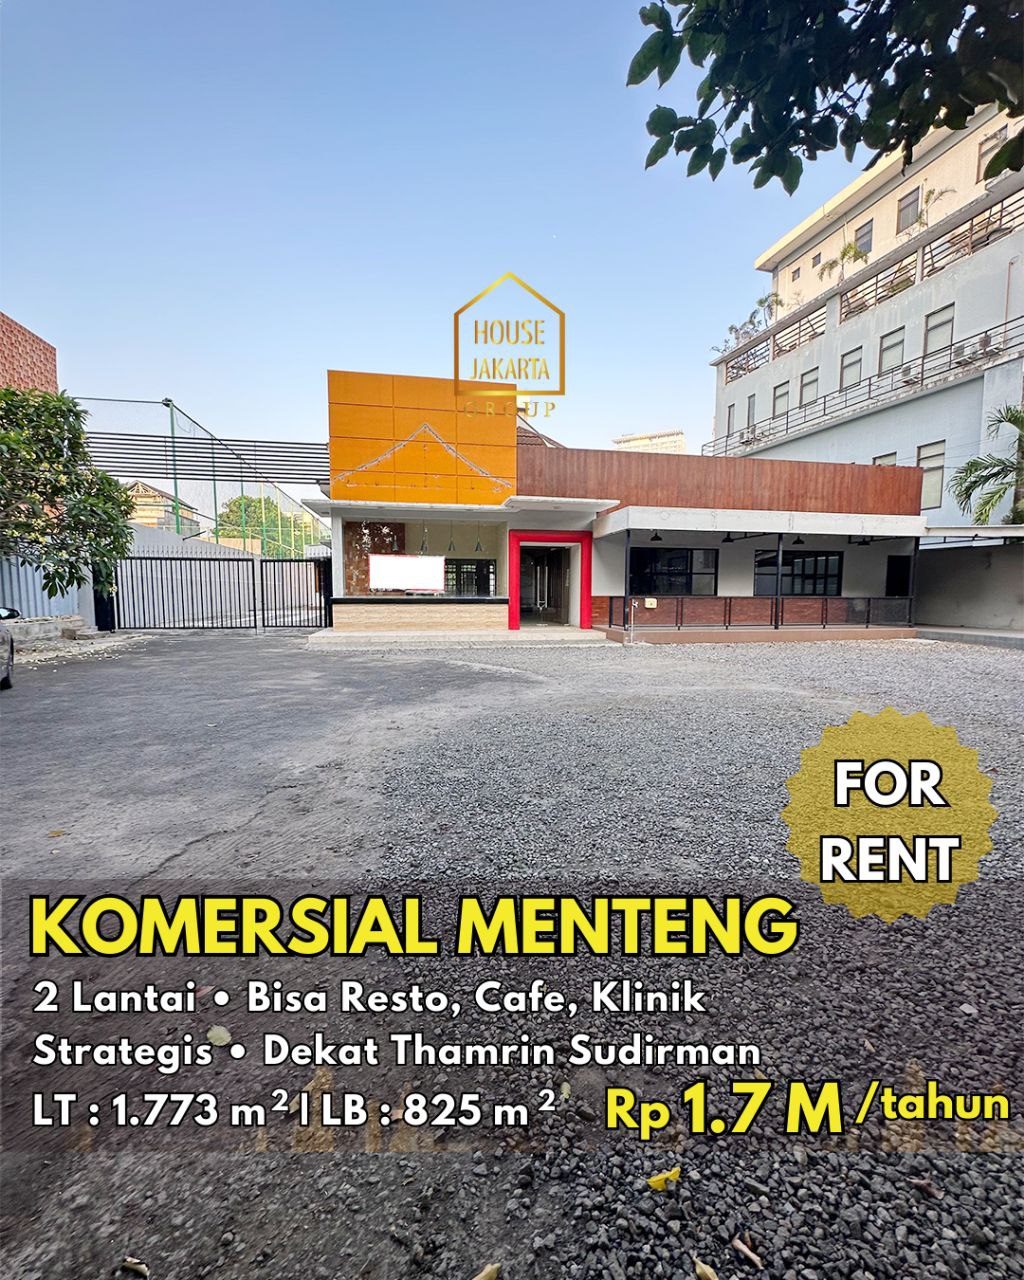 Bangunan 2 Lantai Bisa Resto, Cafe, Klinik. Lokasi Strategis Dekat Thamrin Sudirman.